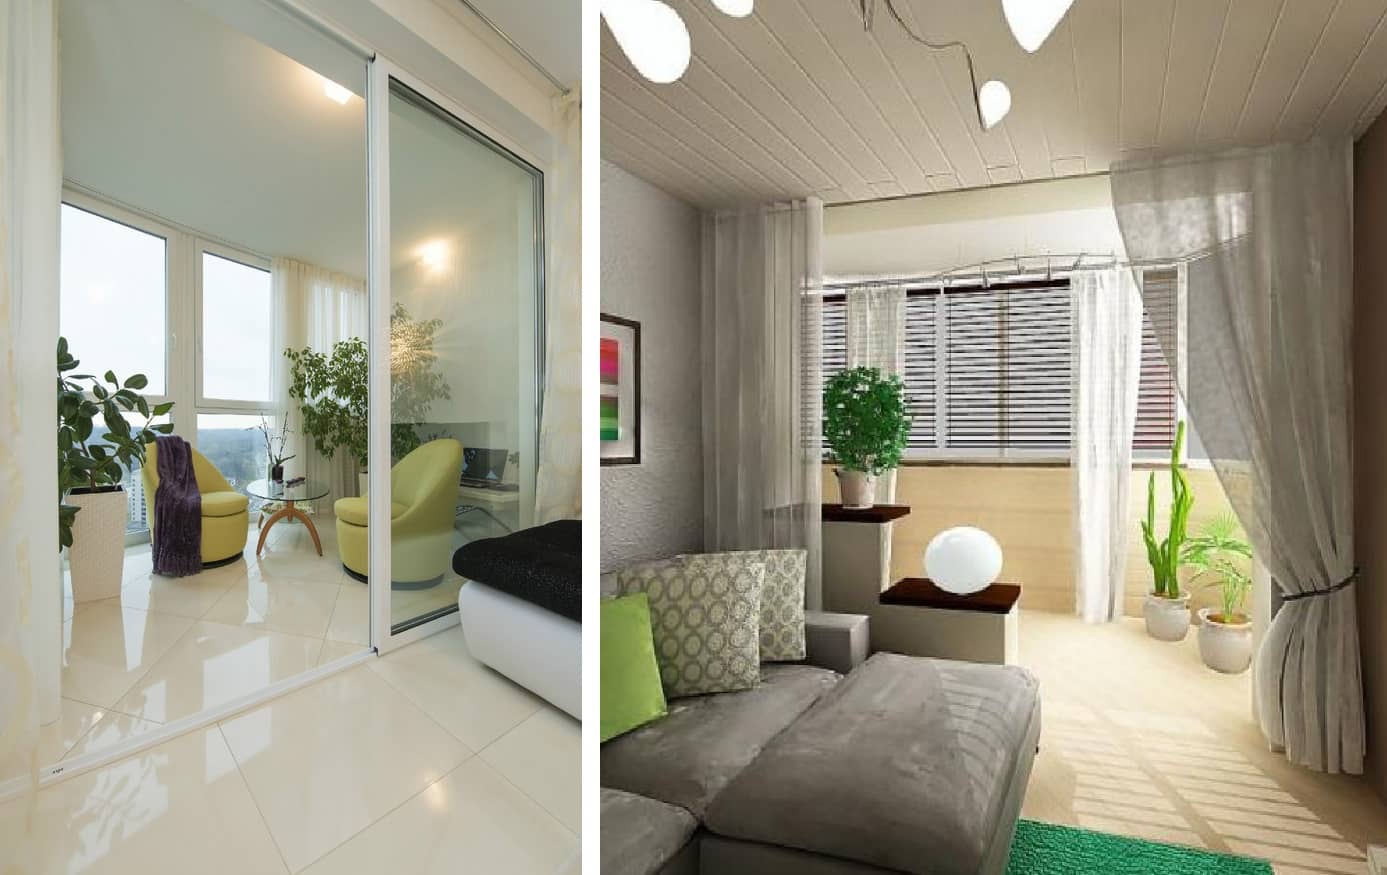 Гостиная с балконом: варианты зонирования и стильного оформления гостиной (105 фото и видео)